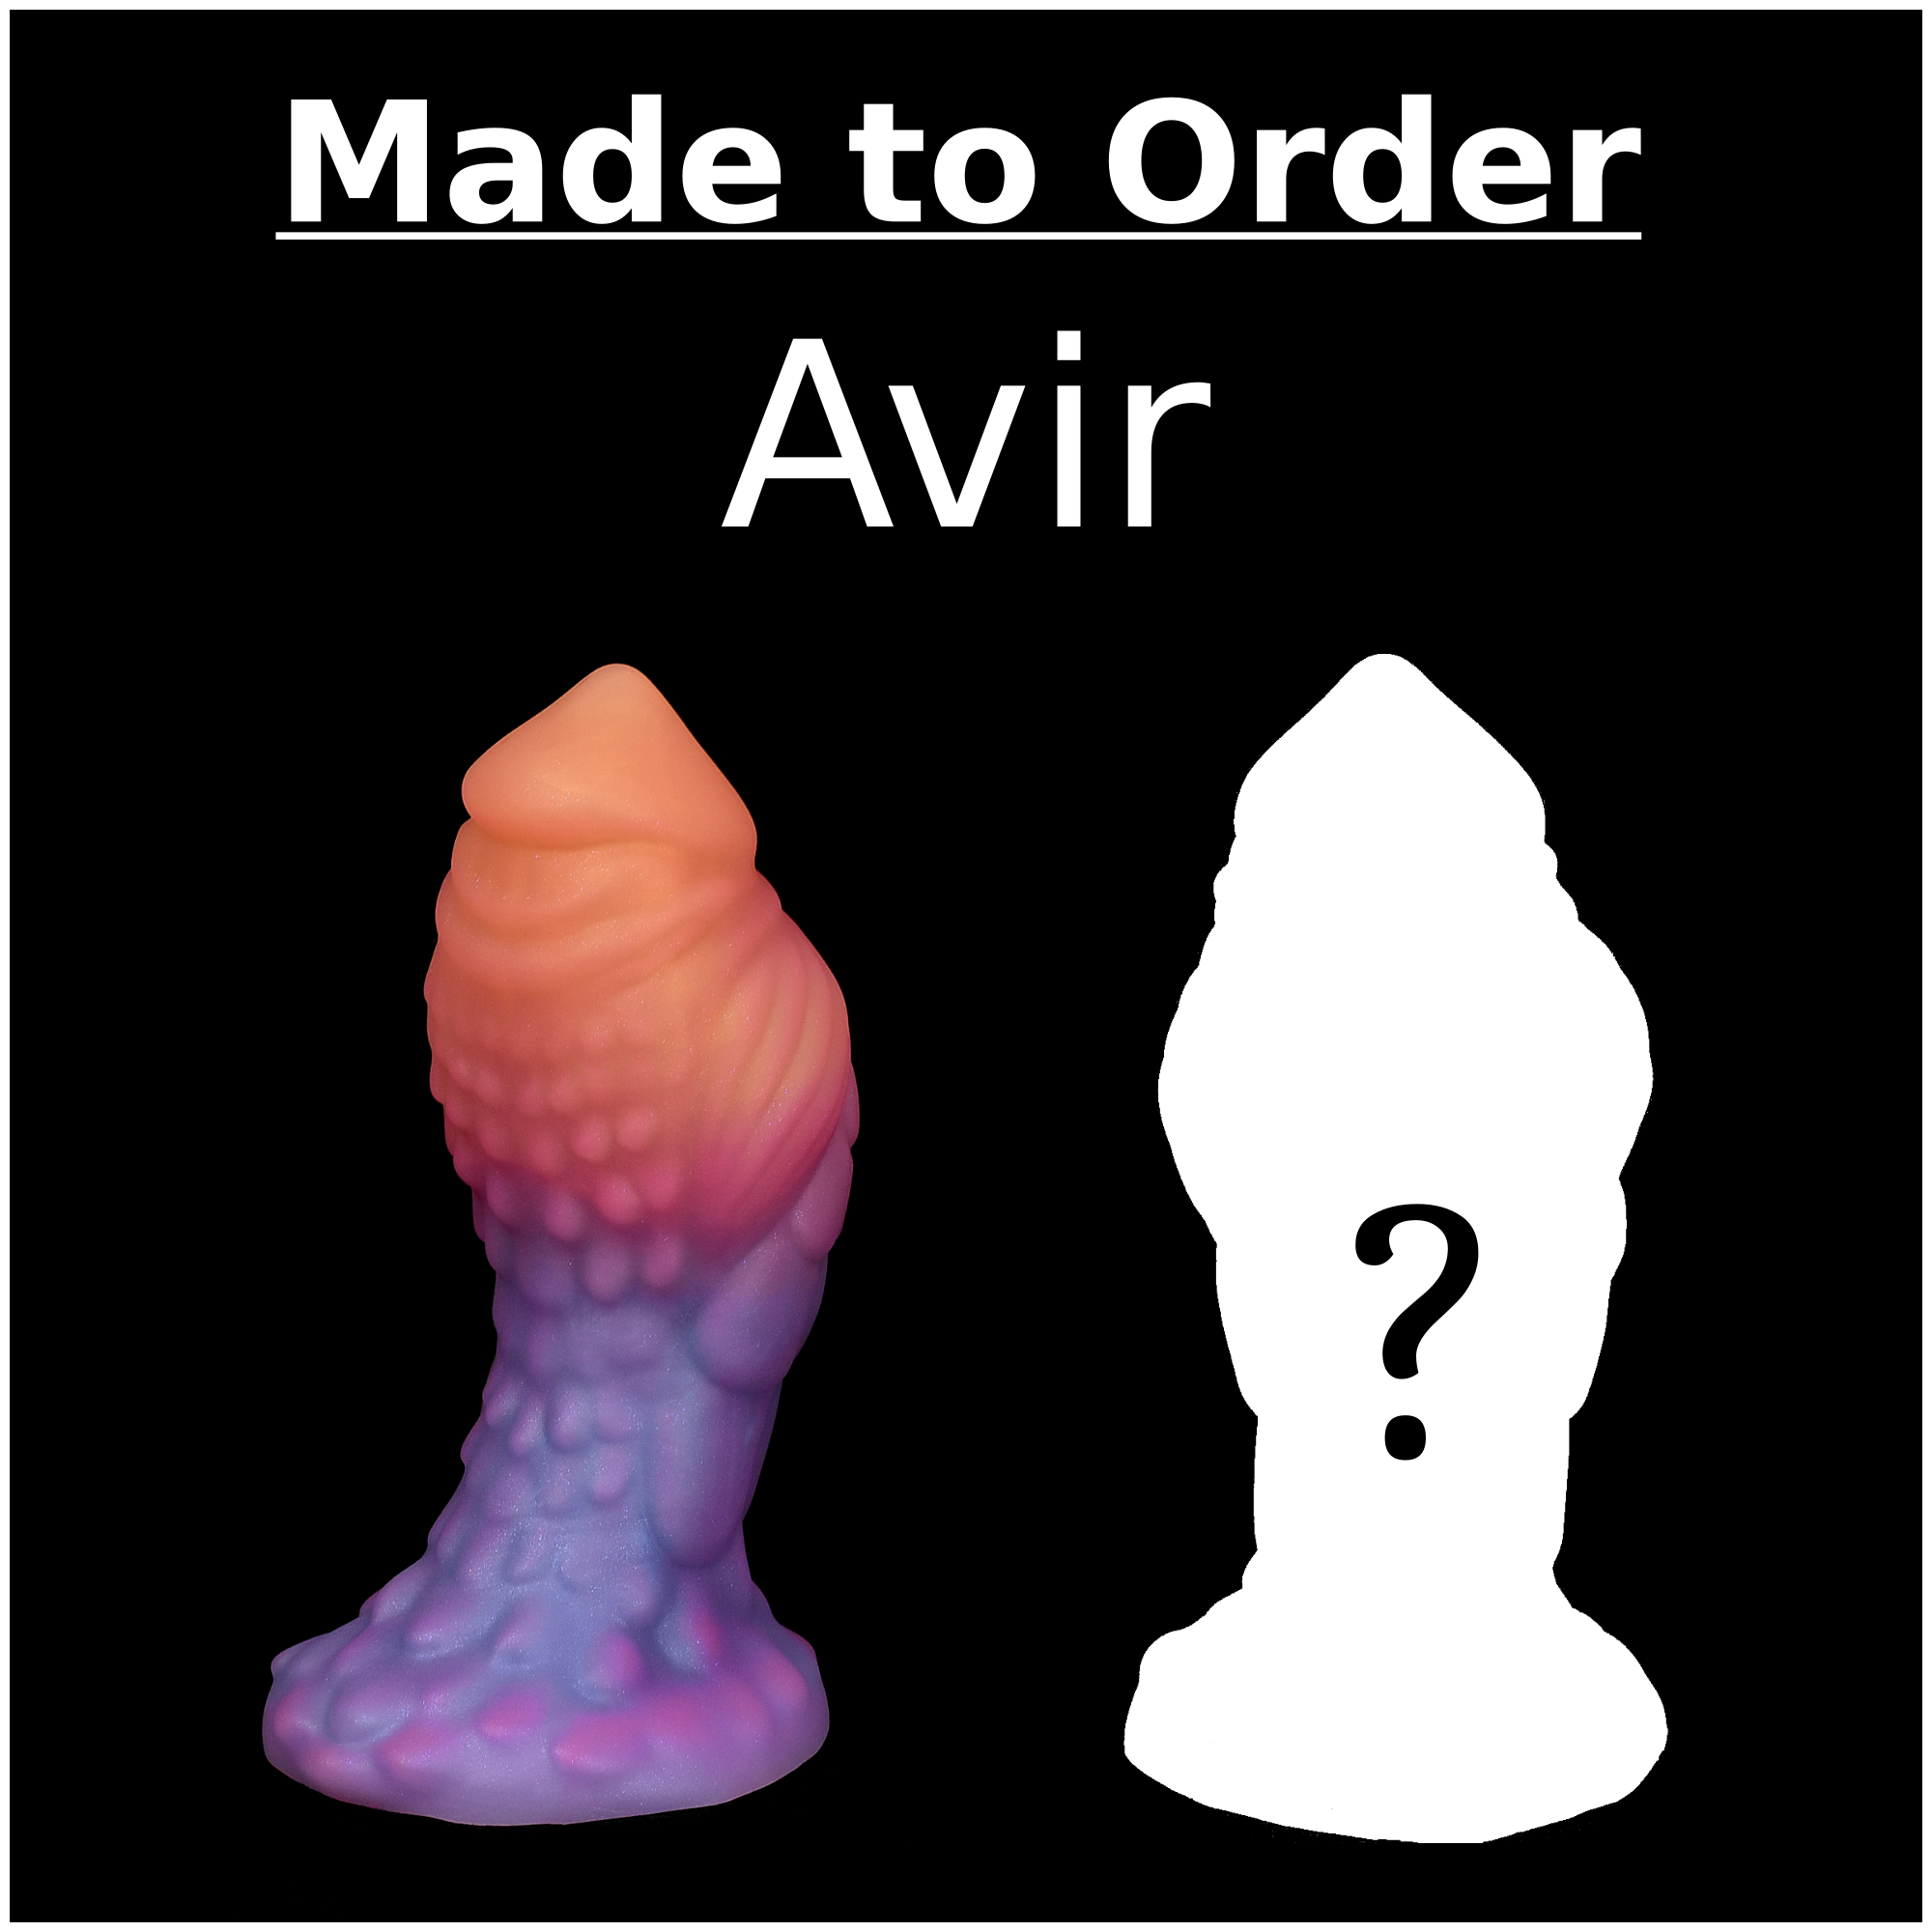 Made to Order Avir